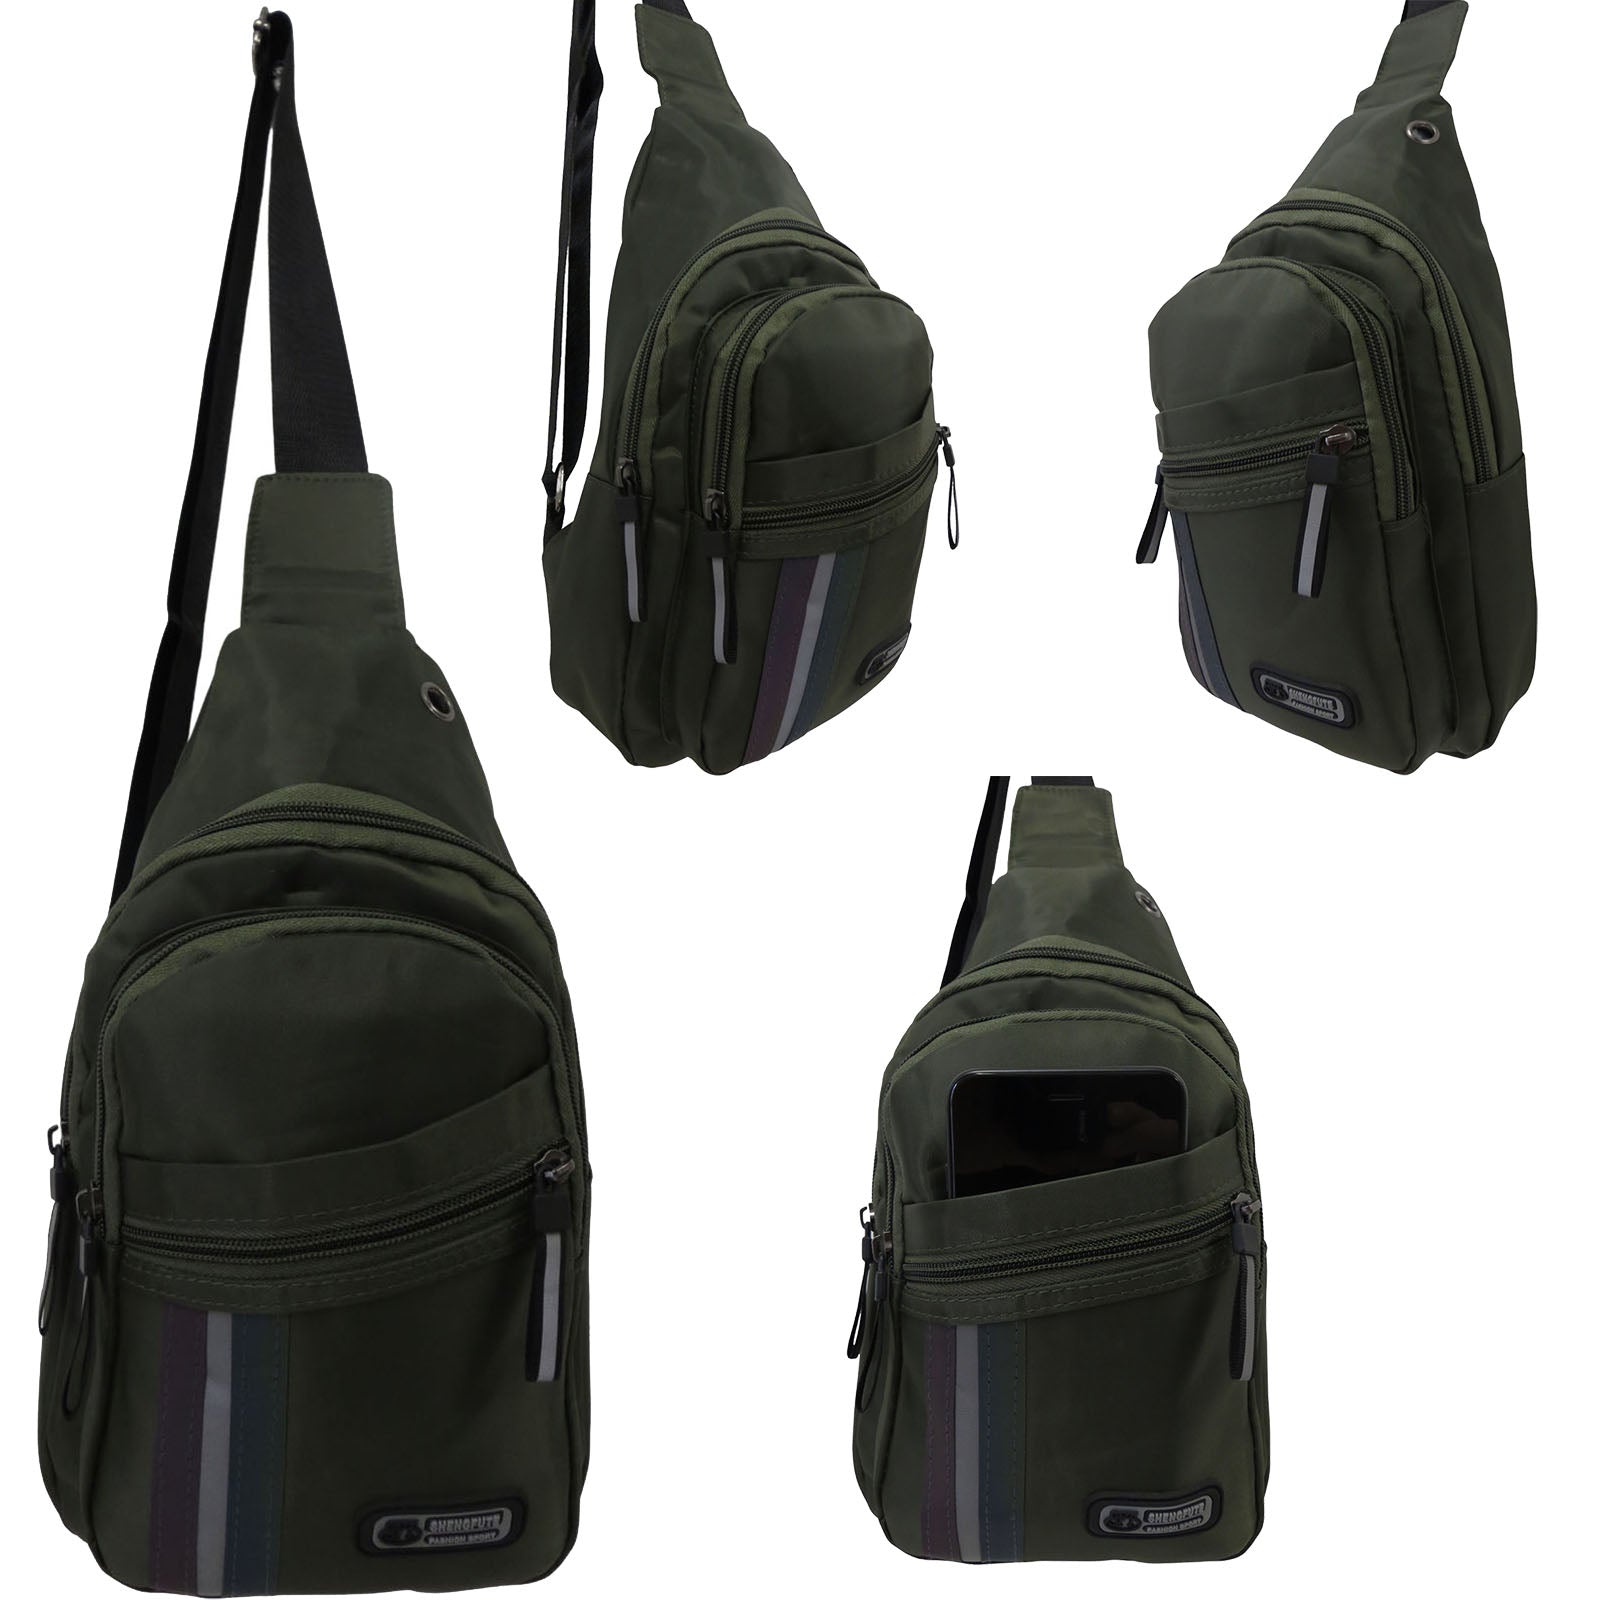 crossbody phone bag wholesale sling messenger for men or women in green